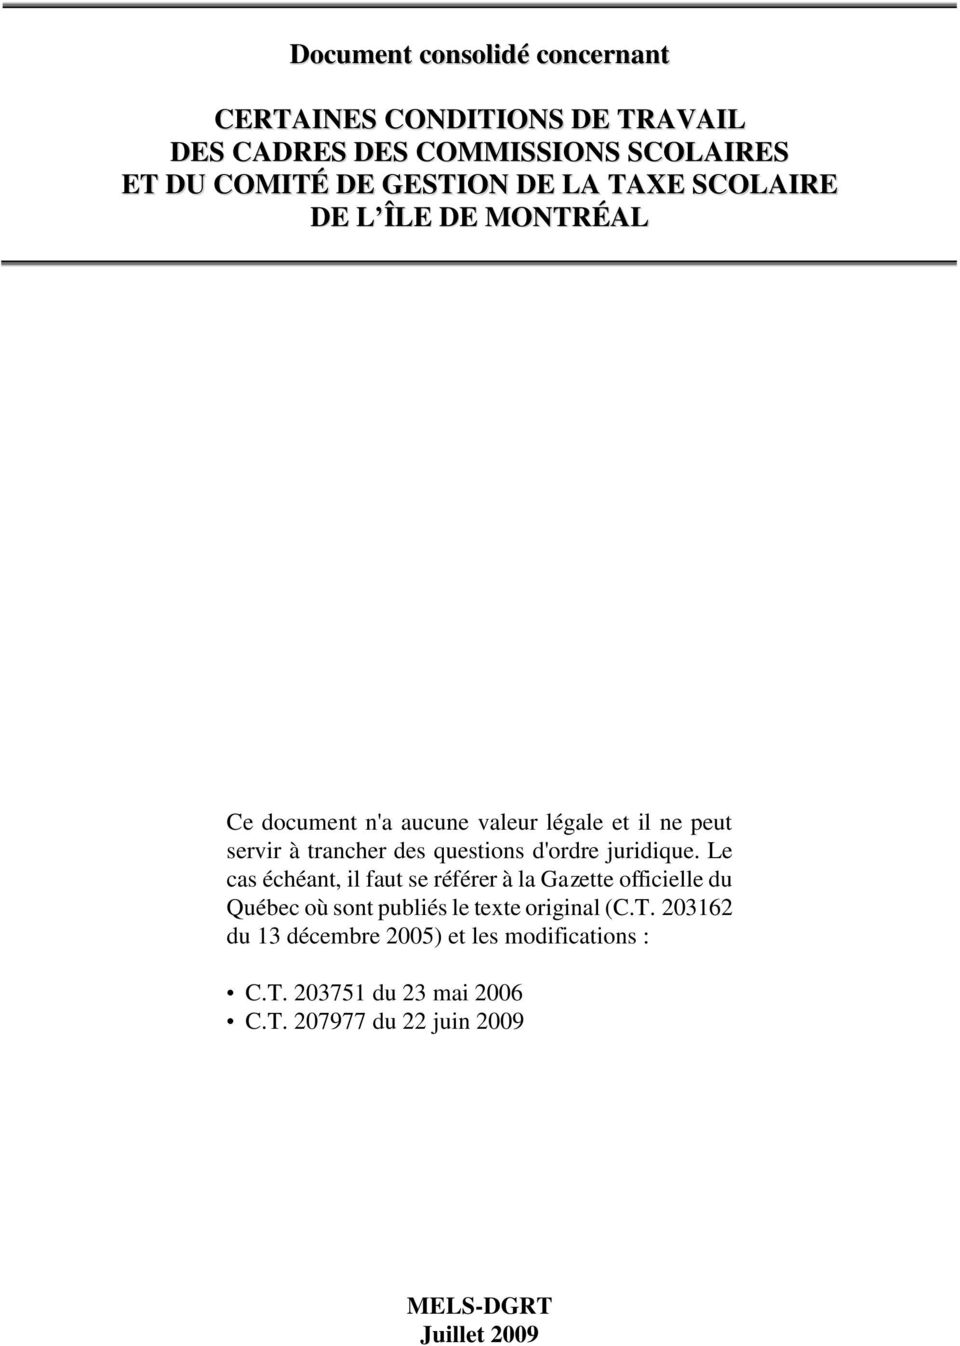 d'ordre juridique. Le cas échéant, il faut se référer à la Gazette officielle du Québec où sont publiés le texte original (C.